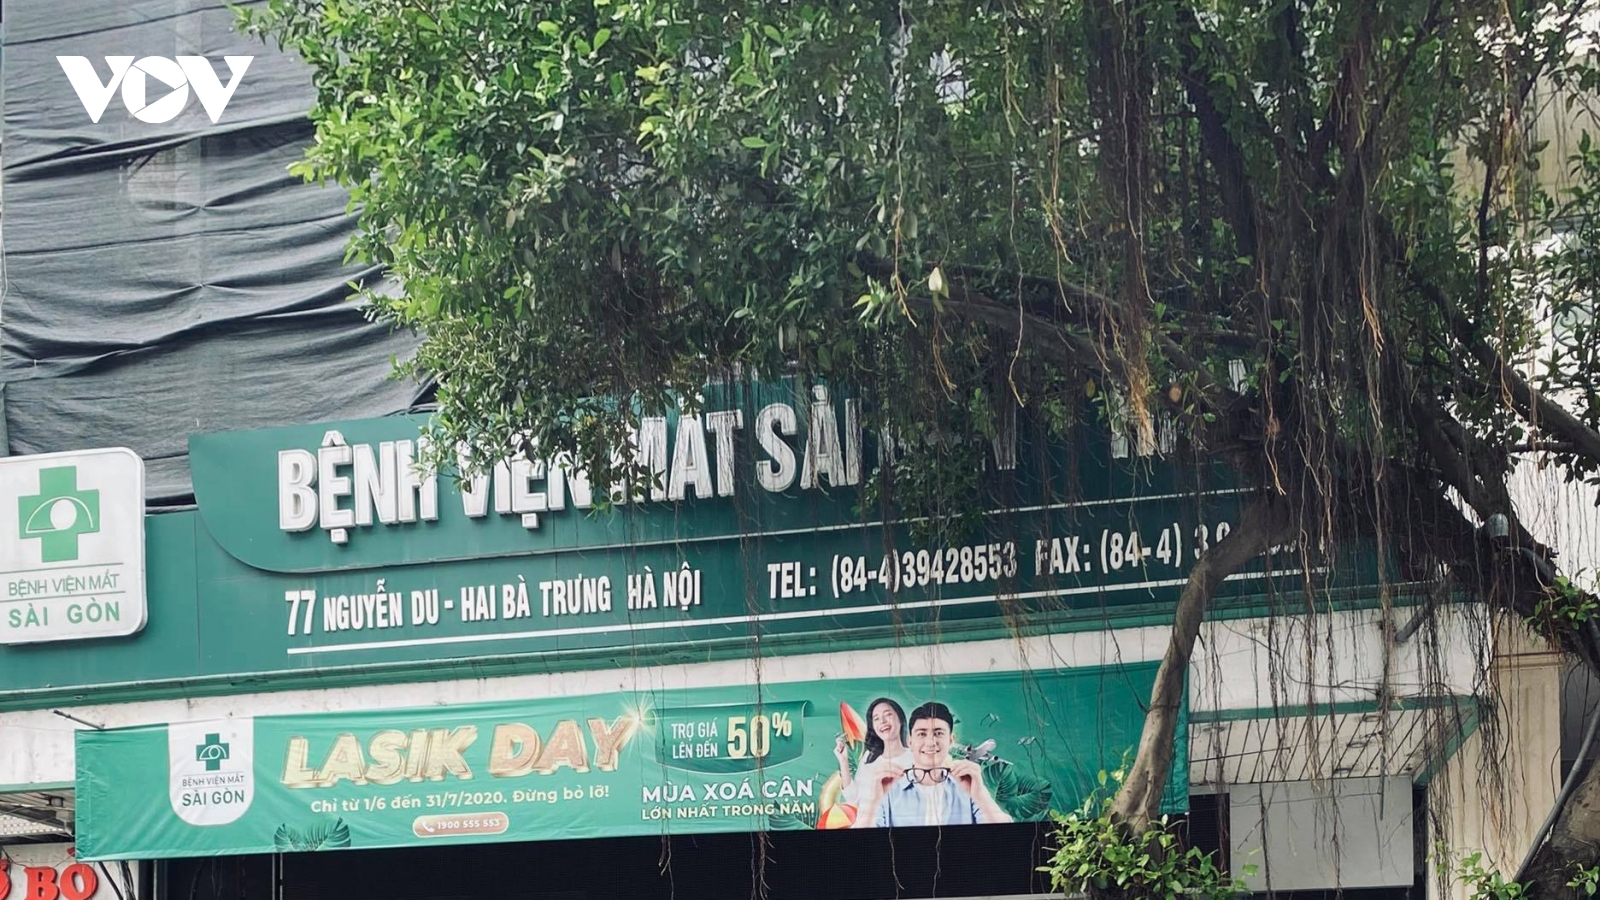 BV Mắt Sài Gòn-Hà Nội có sai khi bán thuốc tại quầy thu ngân?